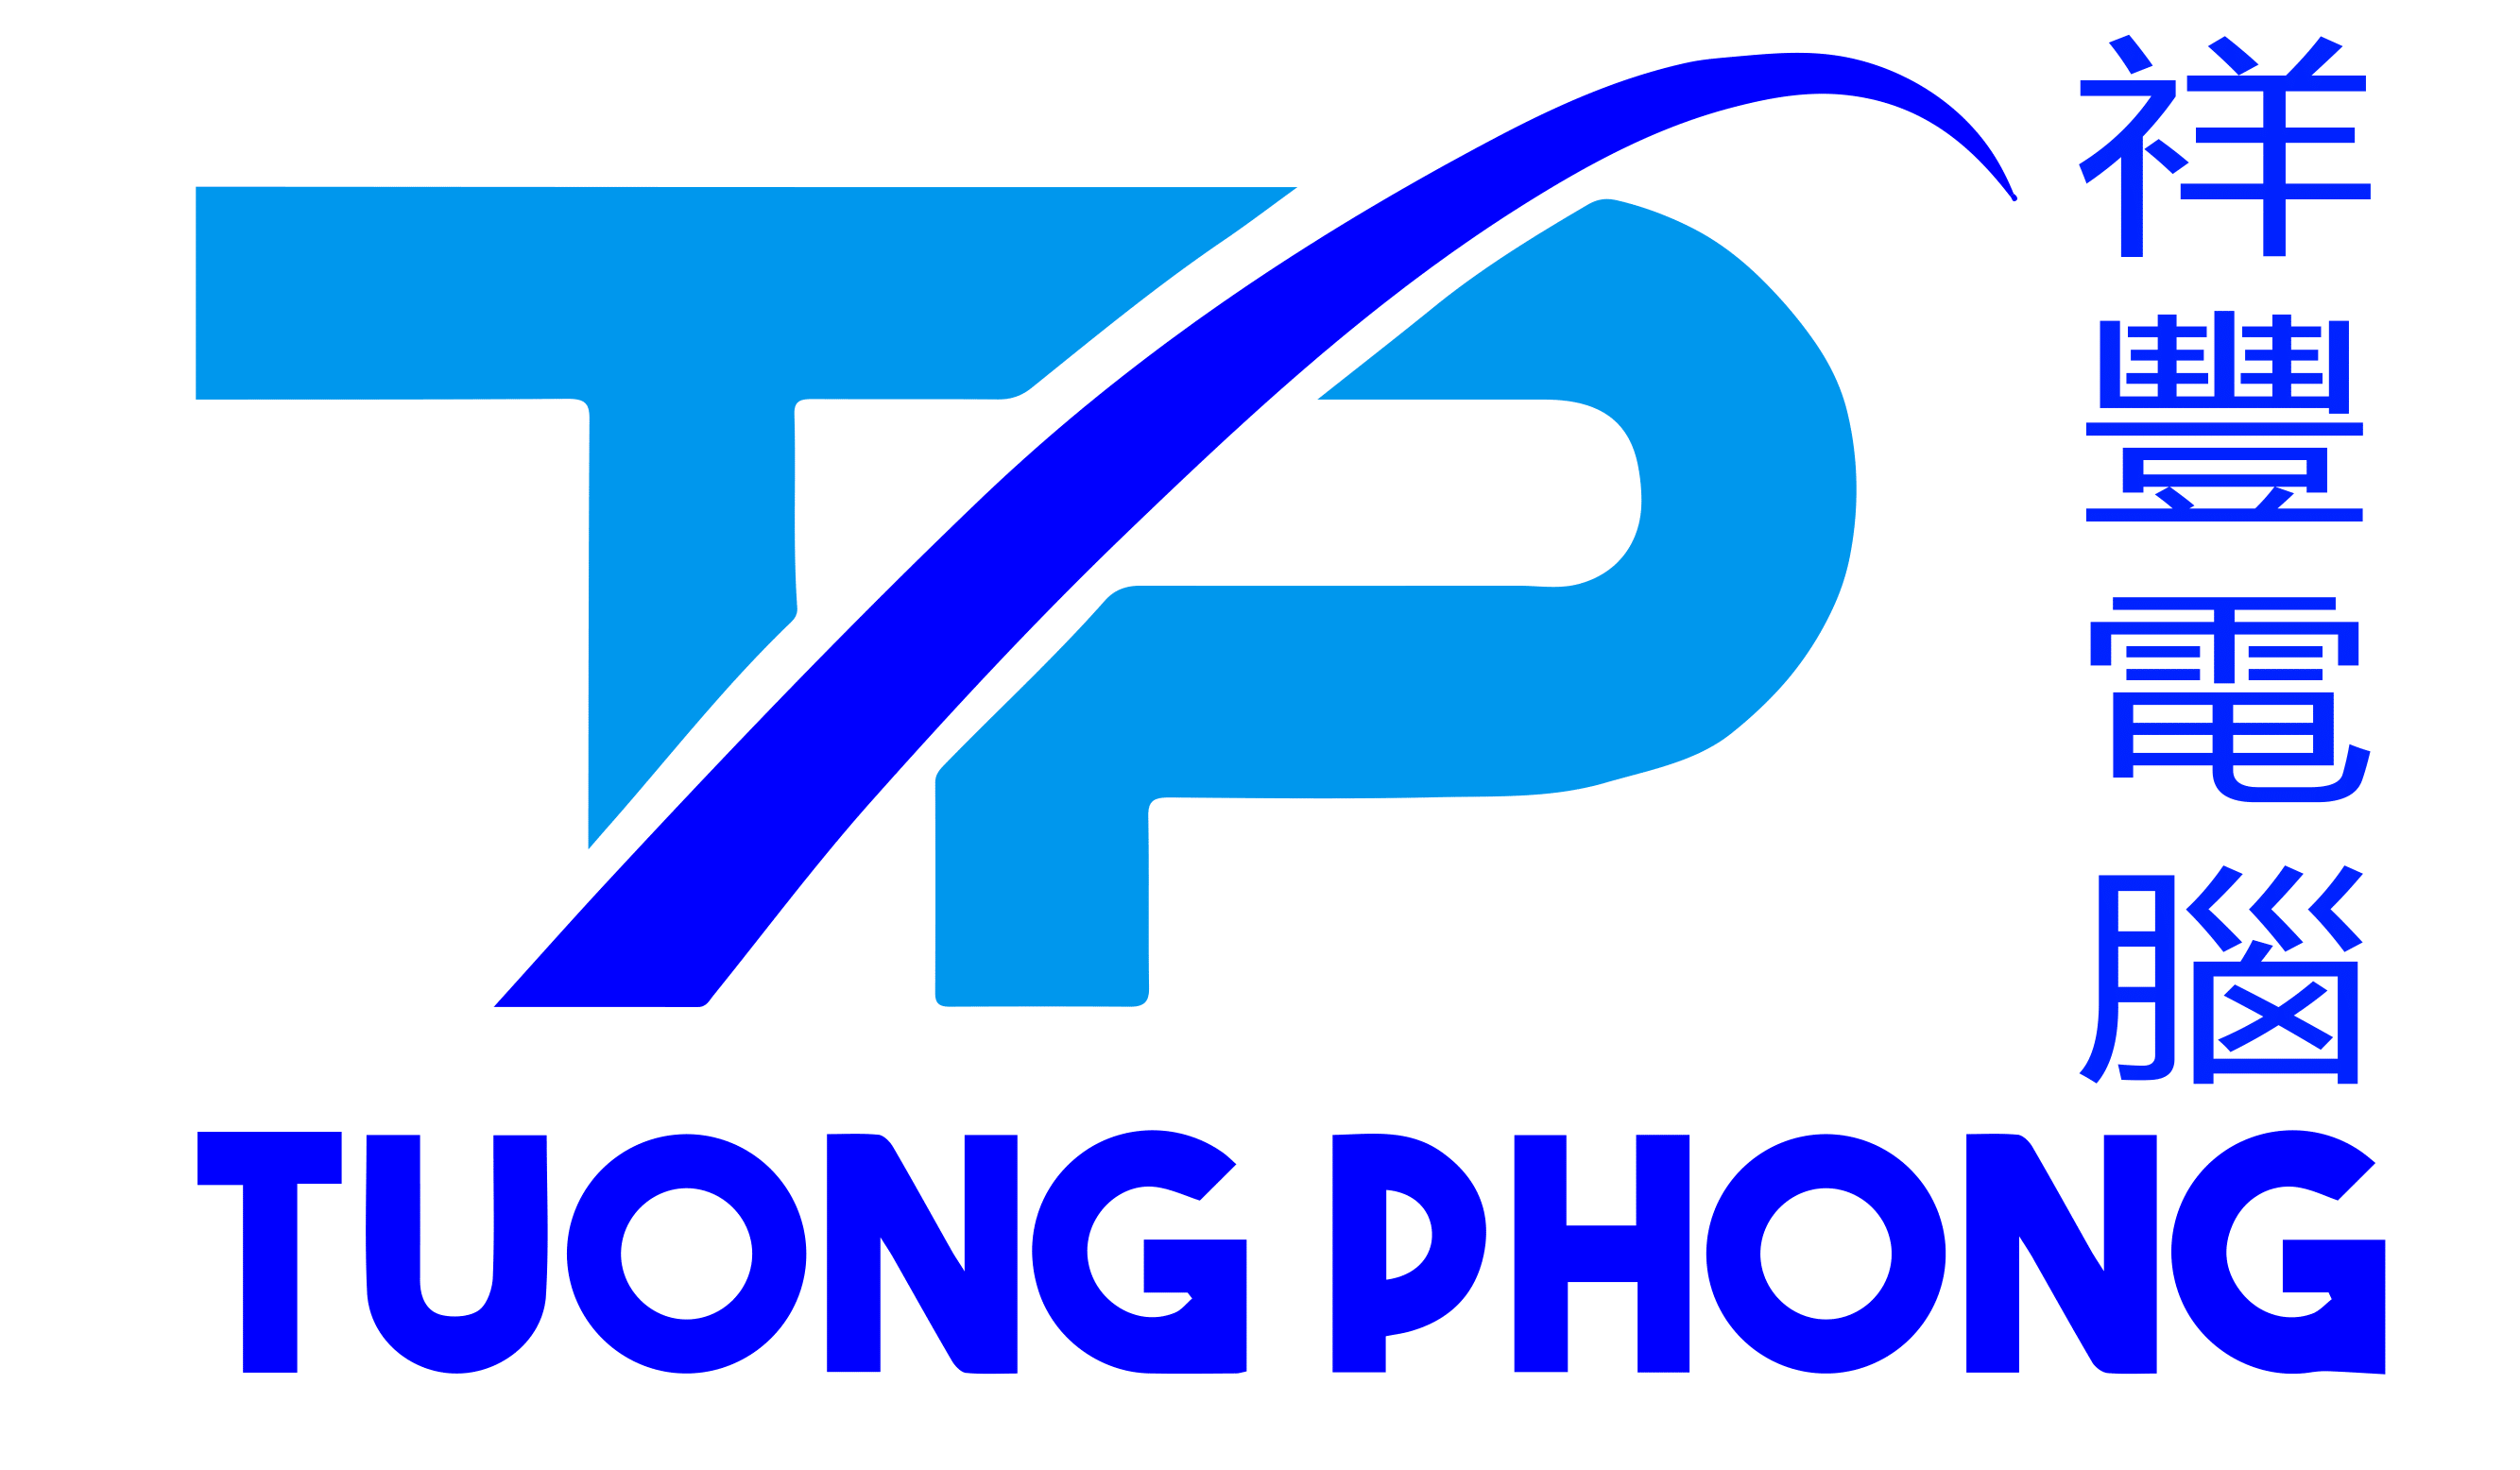 Tuongphonglogo